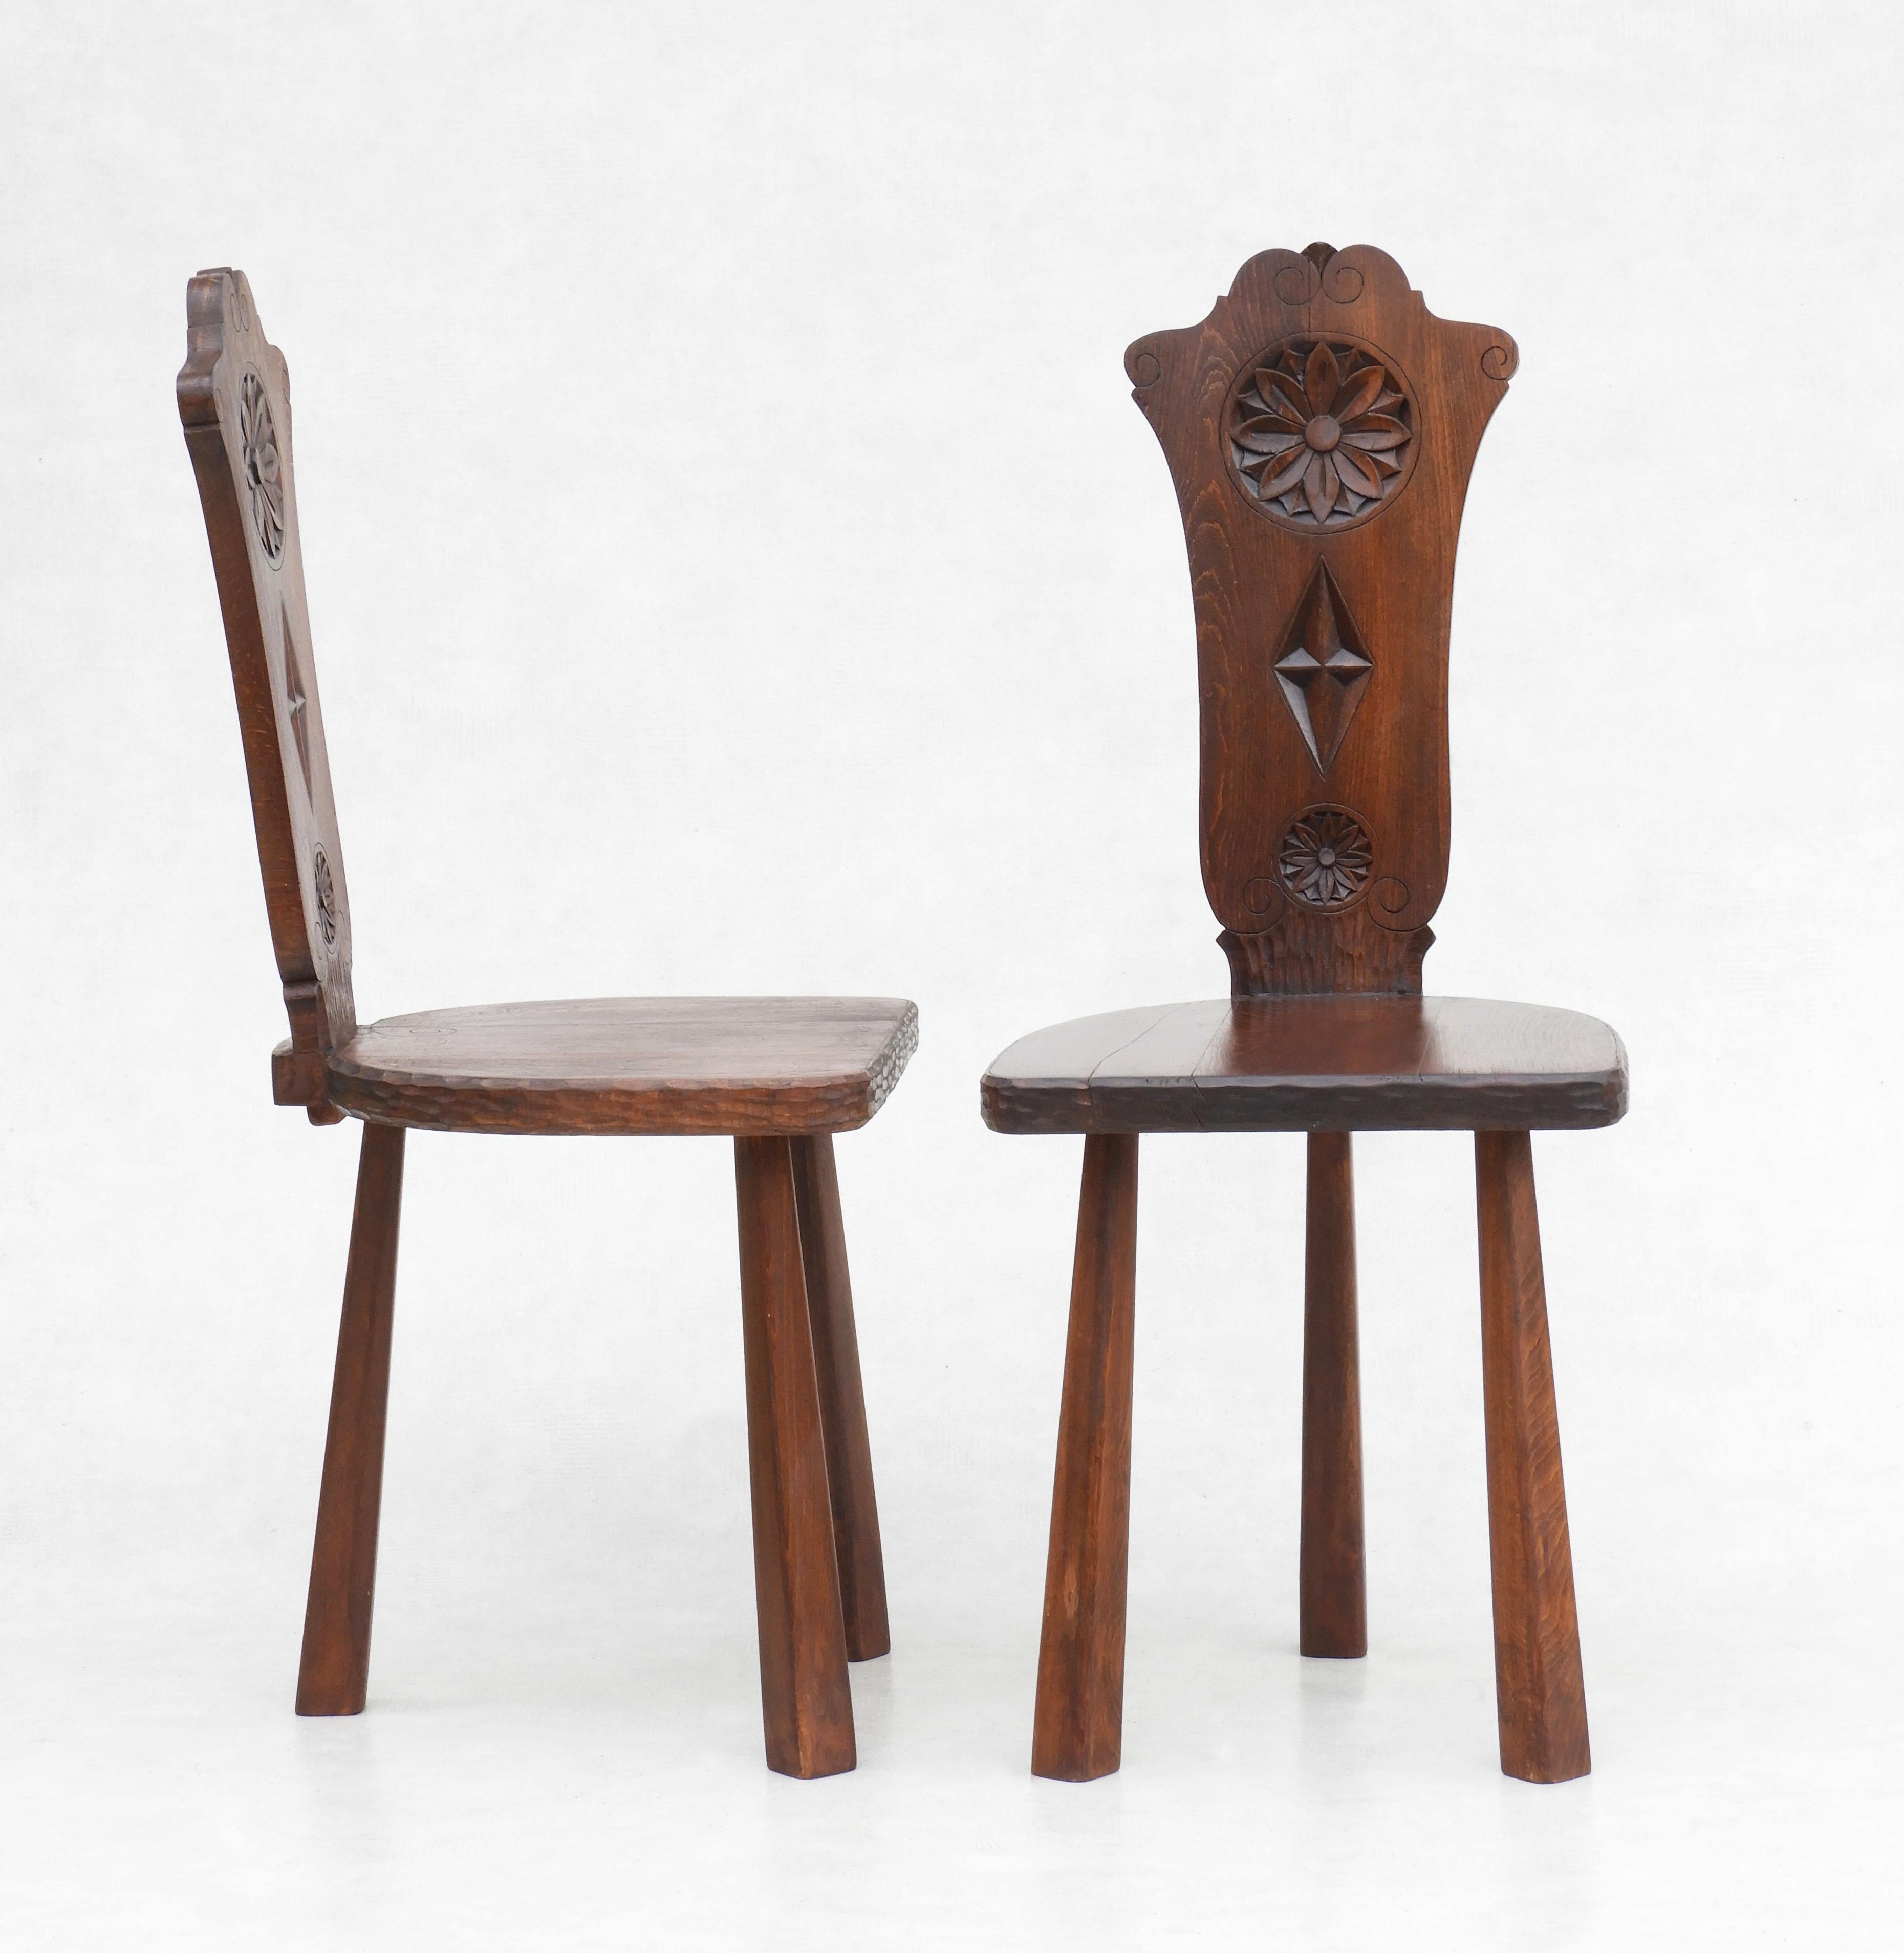 20th Century Pair of Basque Tripod Chairs 1950s European Folk Art For Sale